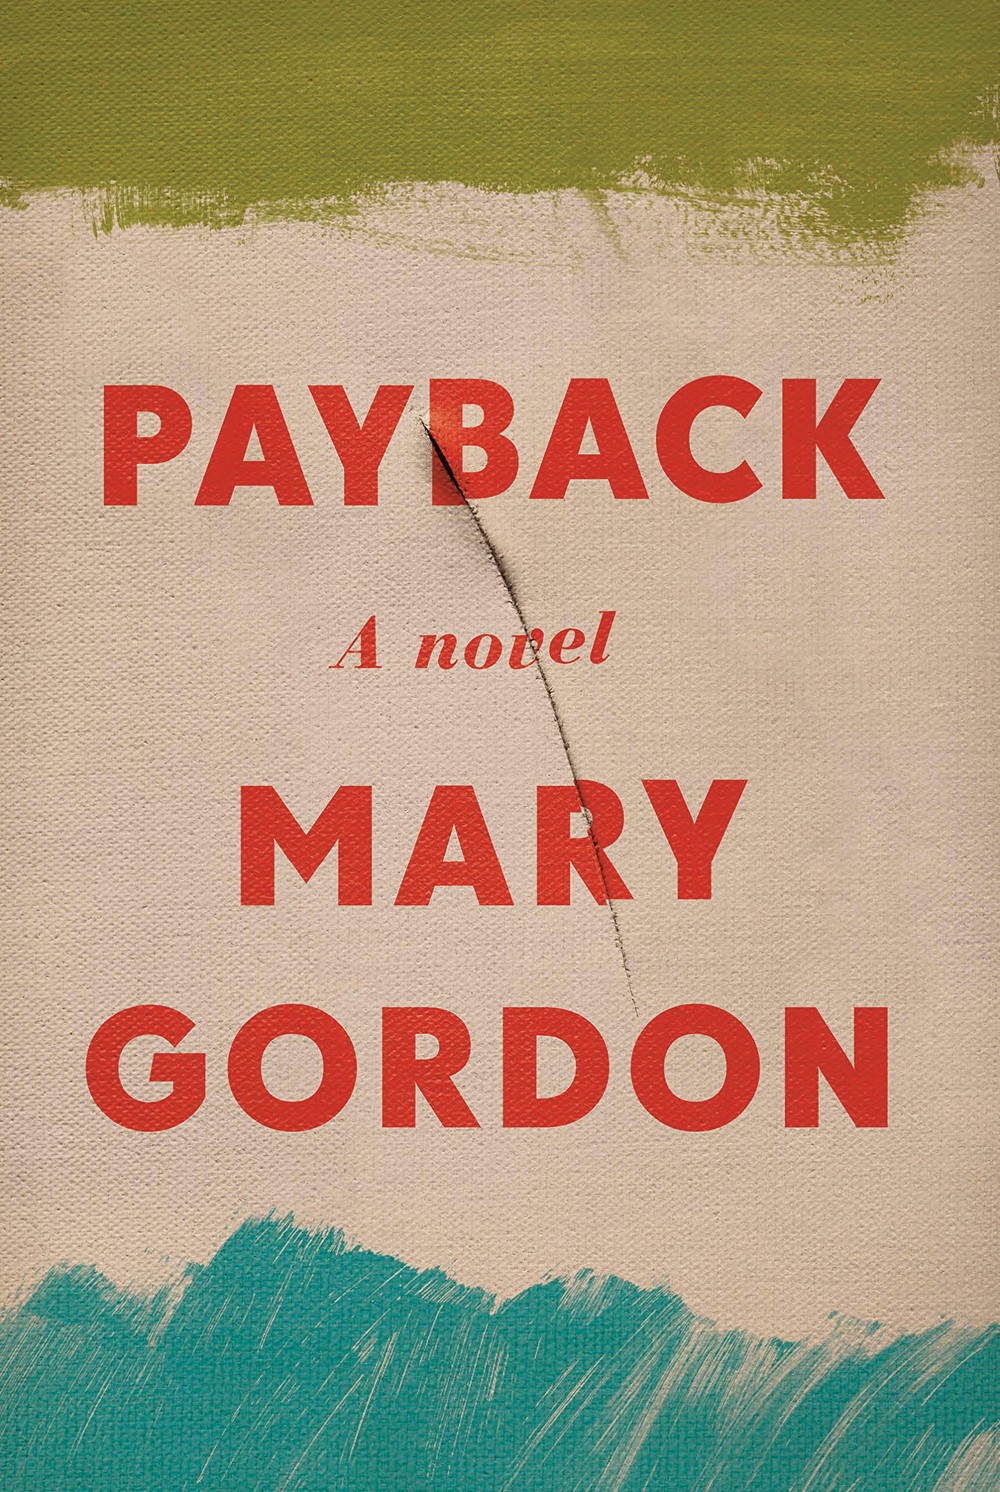 PAYBACK, Mary Gordon